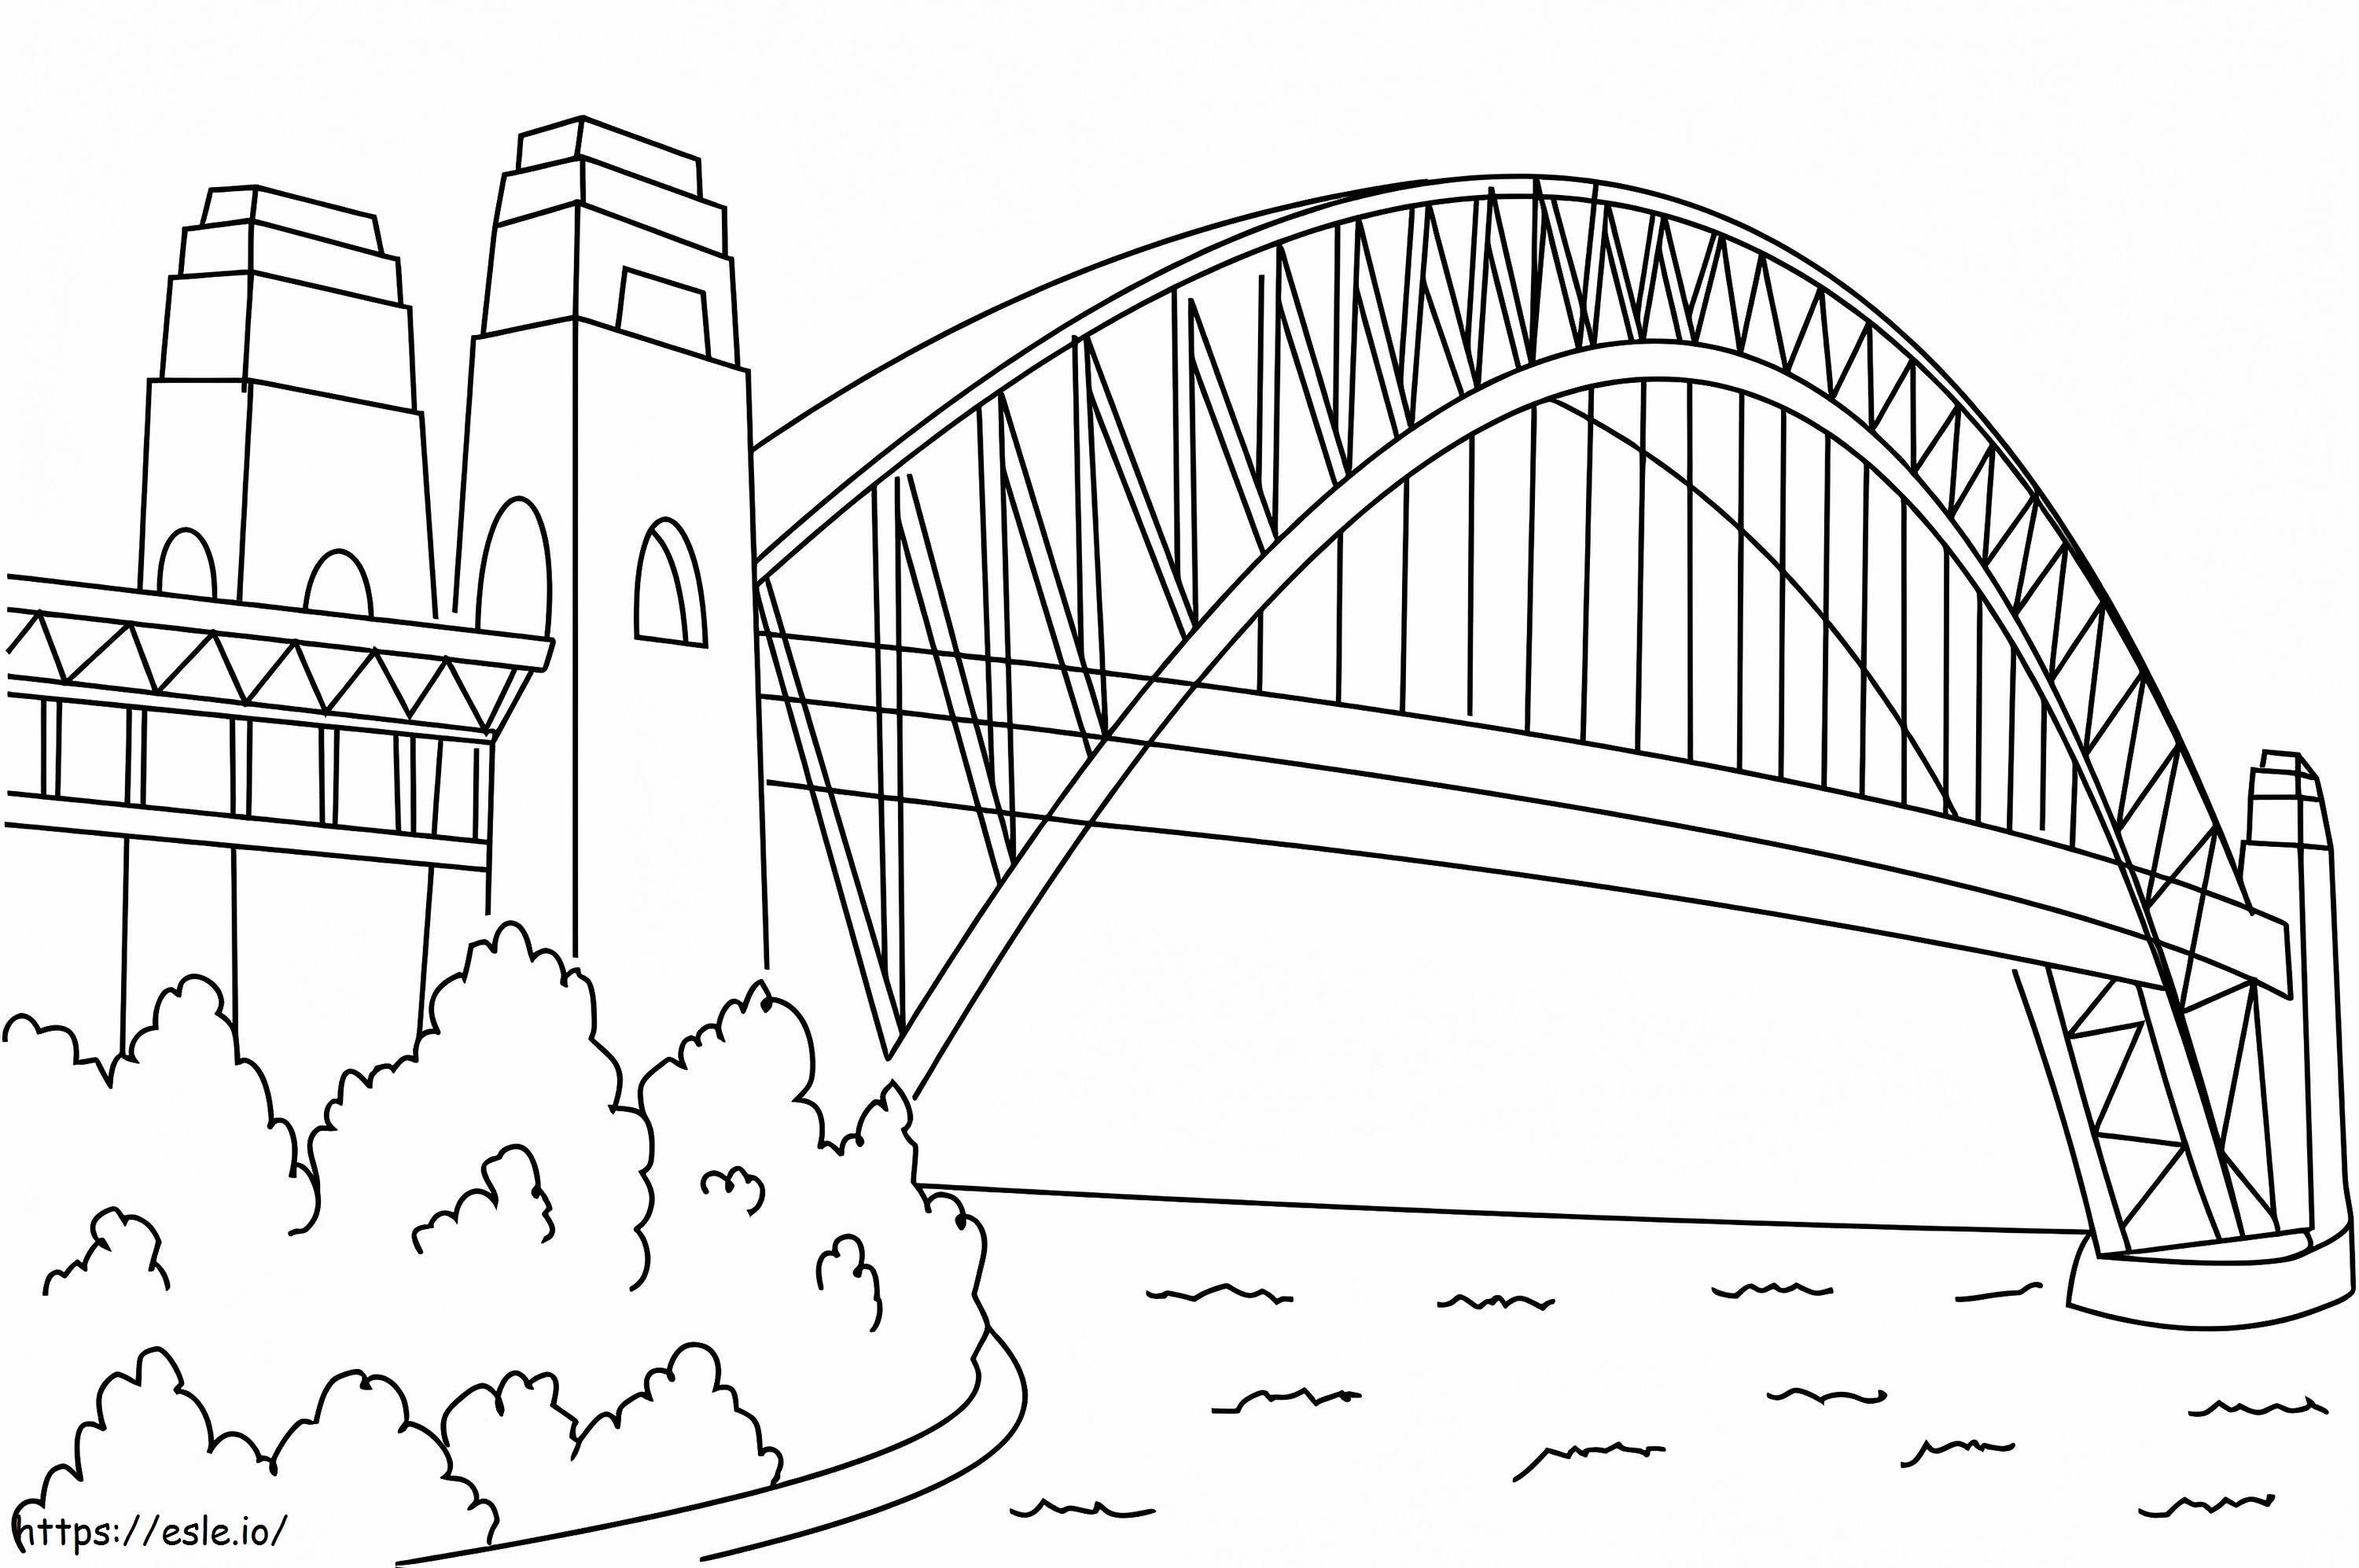 Sydney Harbor Bridge Building coloring page